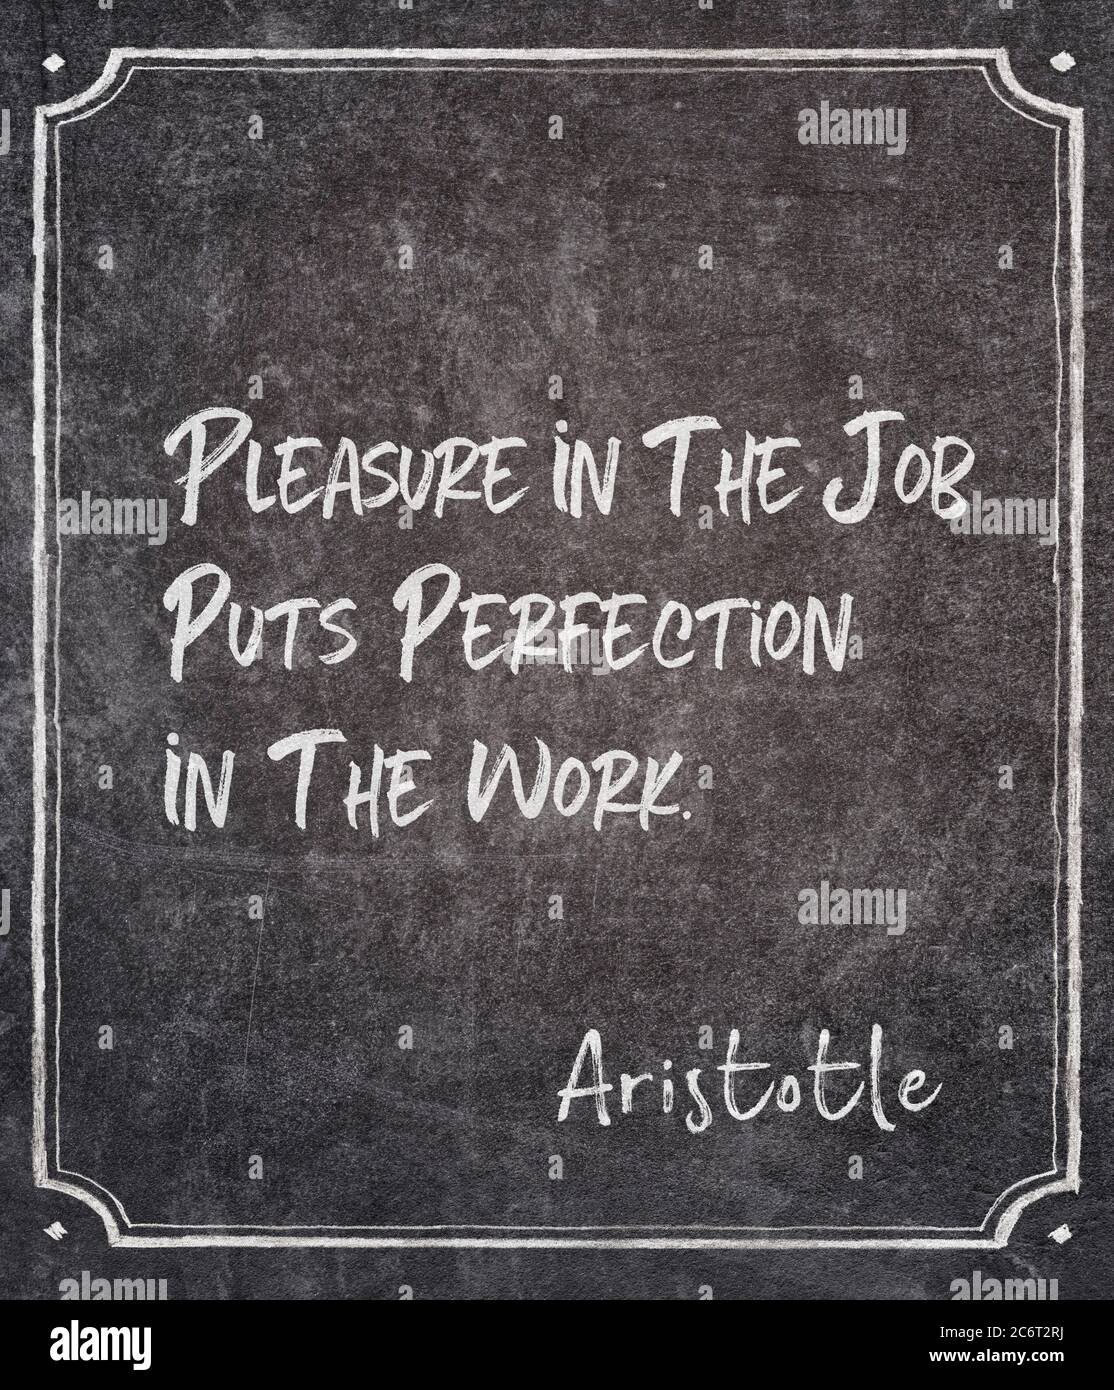 Il piacere nel lavoro mette la perfezione nel lavoro - antico filosofo greco Aristotele citazione scritta su lavagna incorniciata Foto Stock